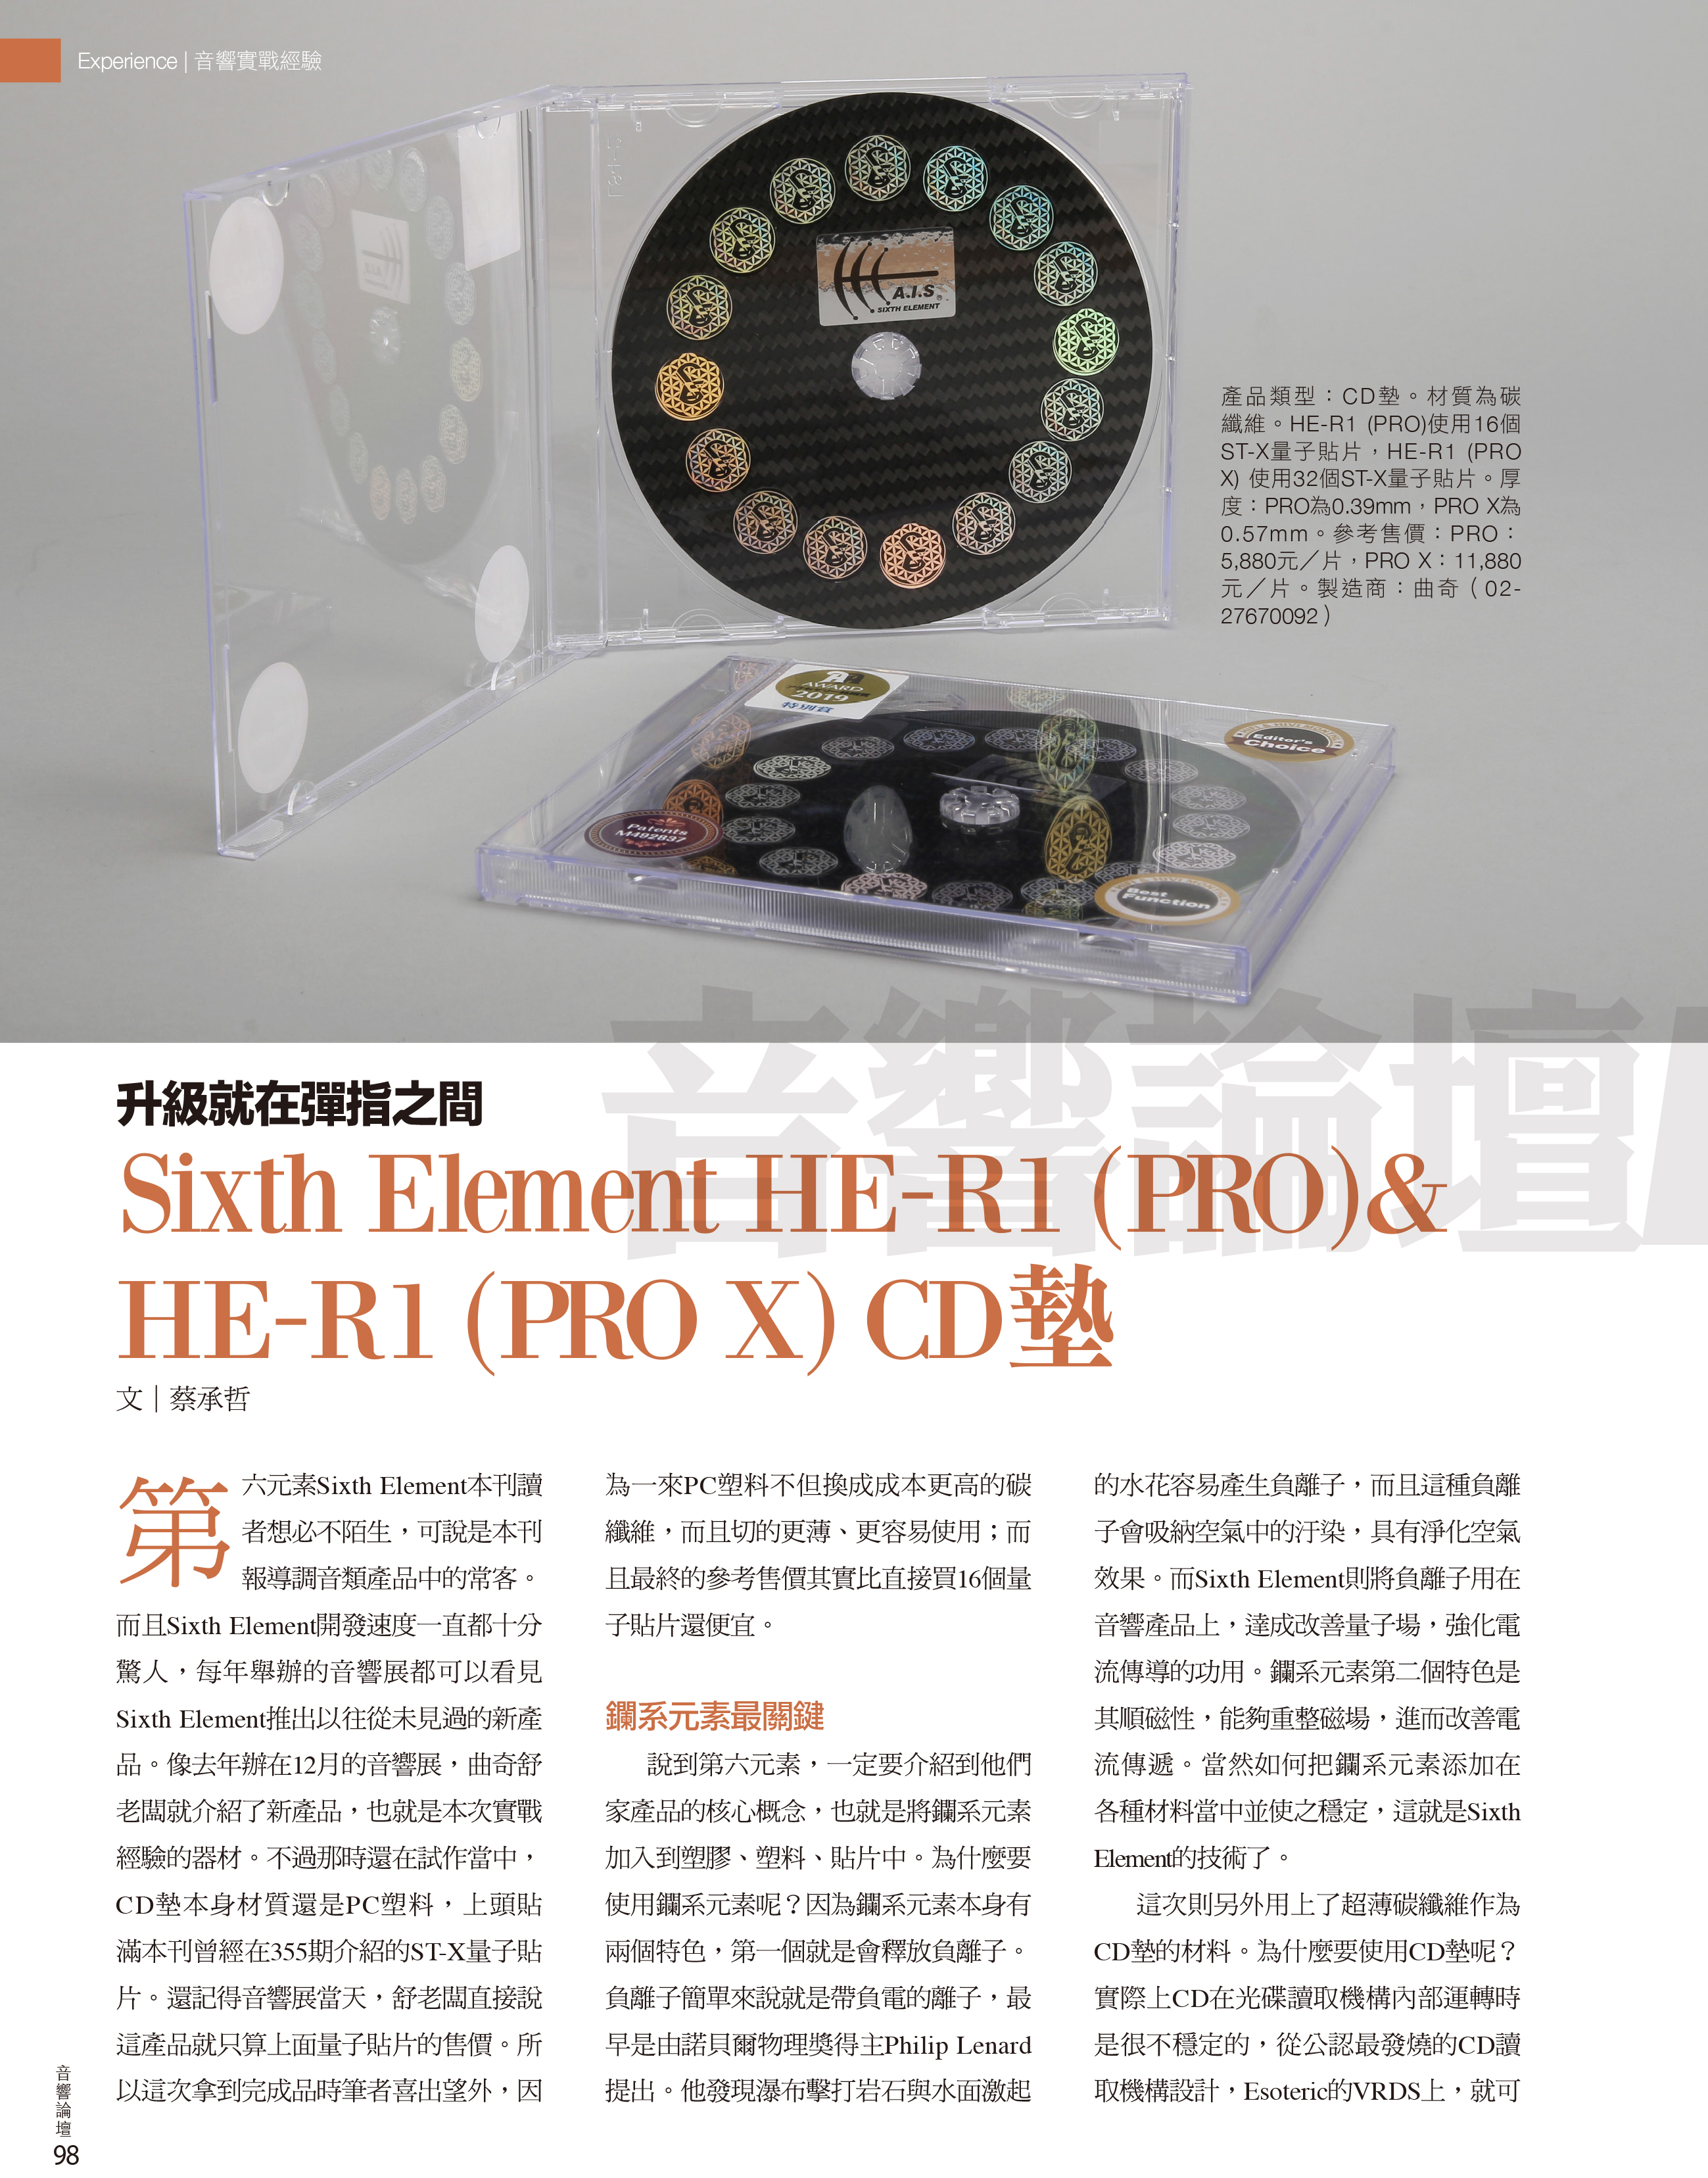 HE-R1 CD/DVD 八八鎮 PRO PROX CD/DVD 3D DISC STABILIZER